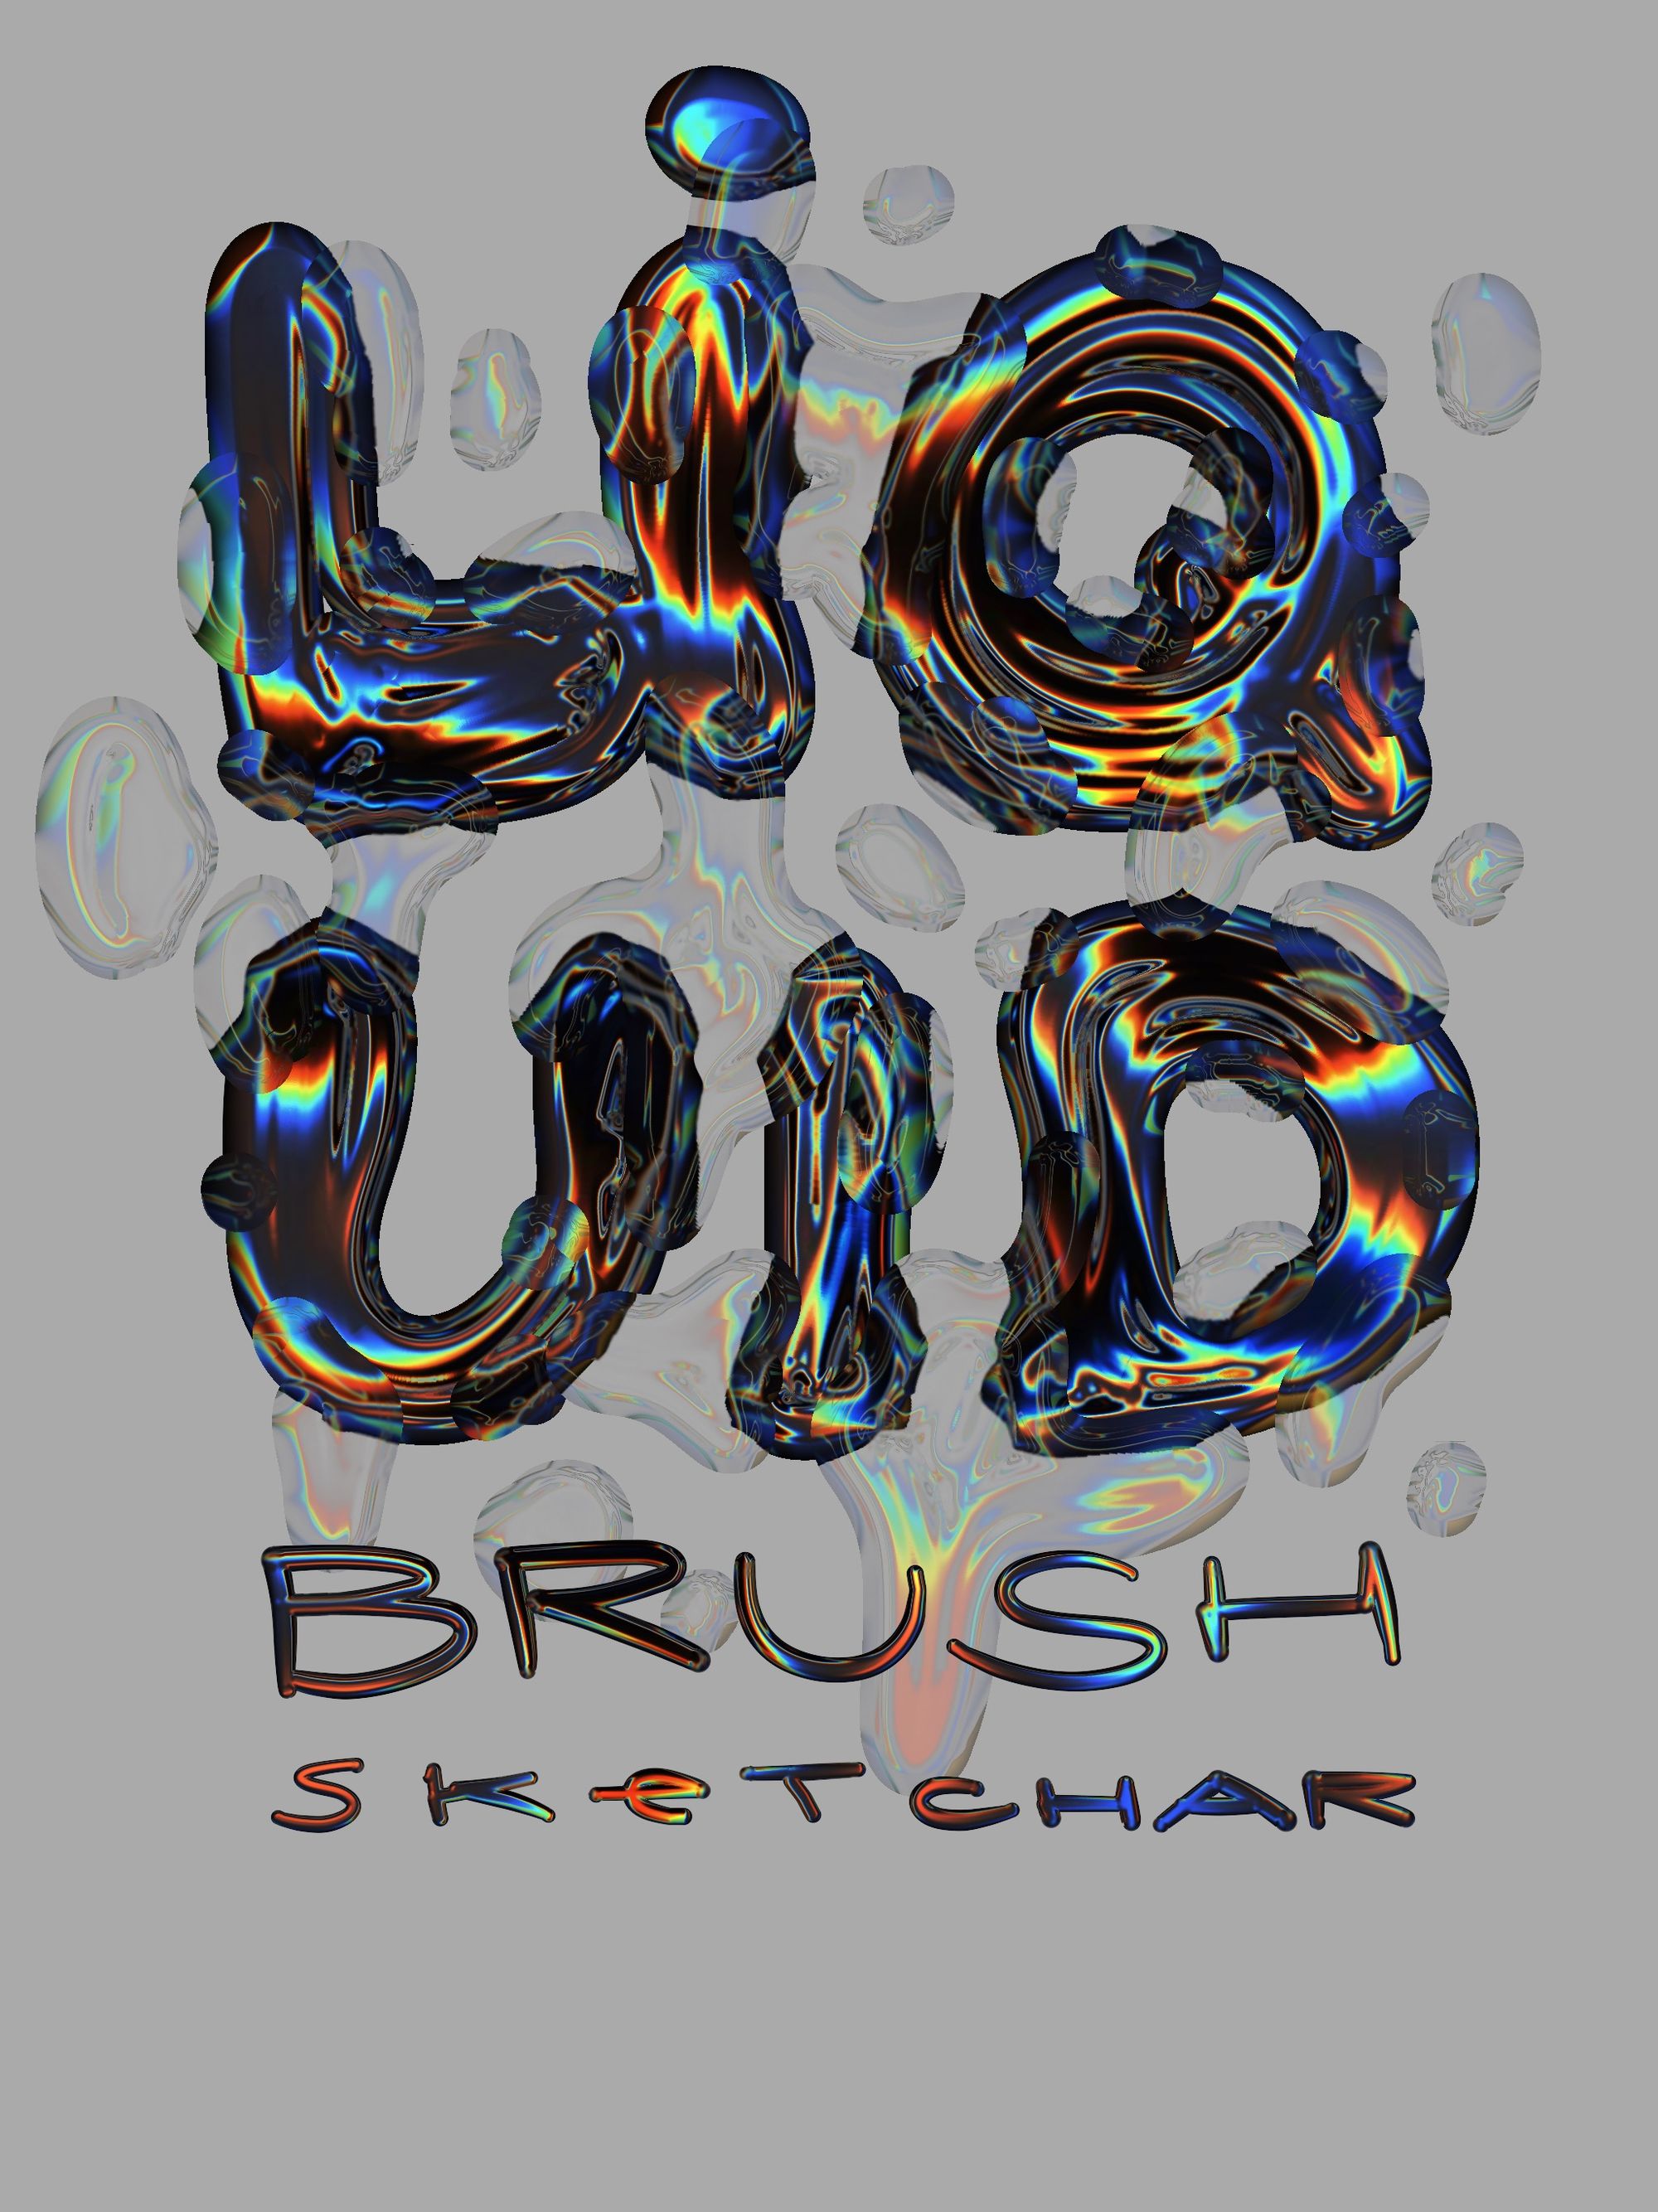 Introducing Liquid Brush